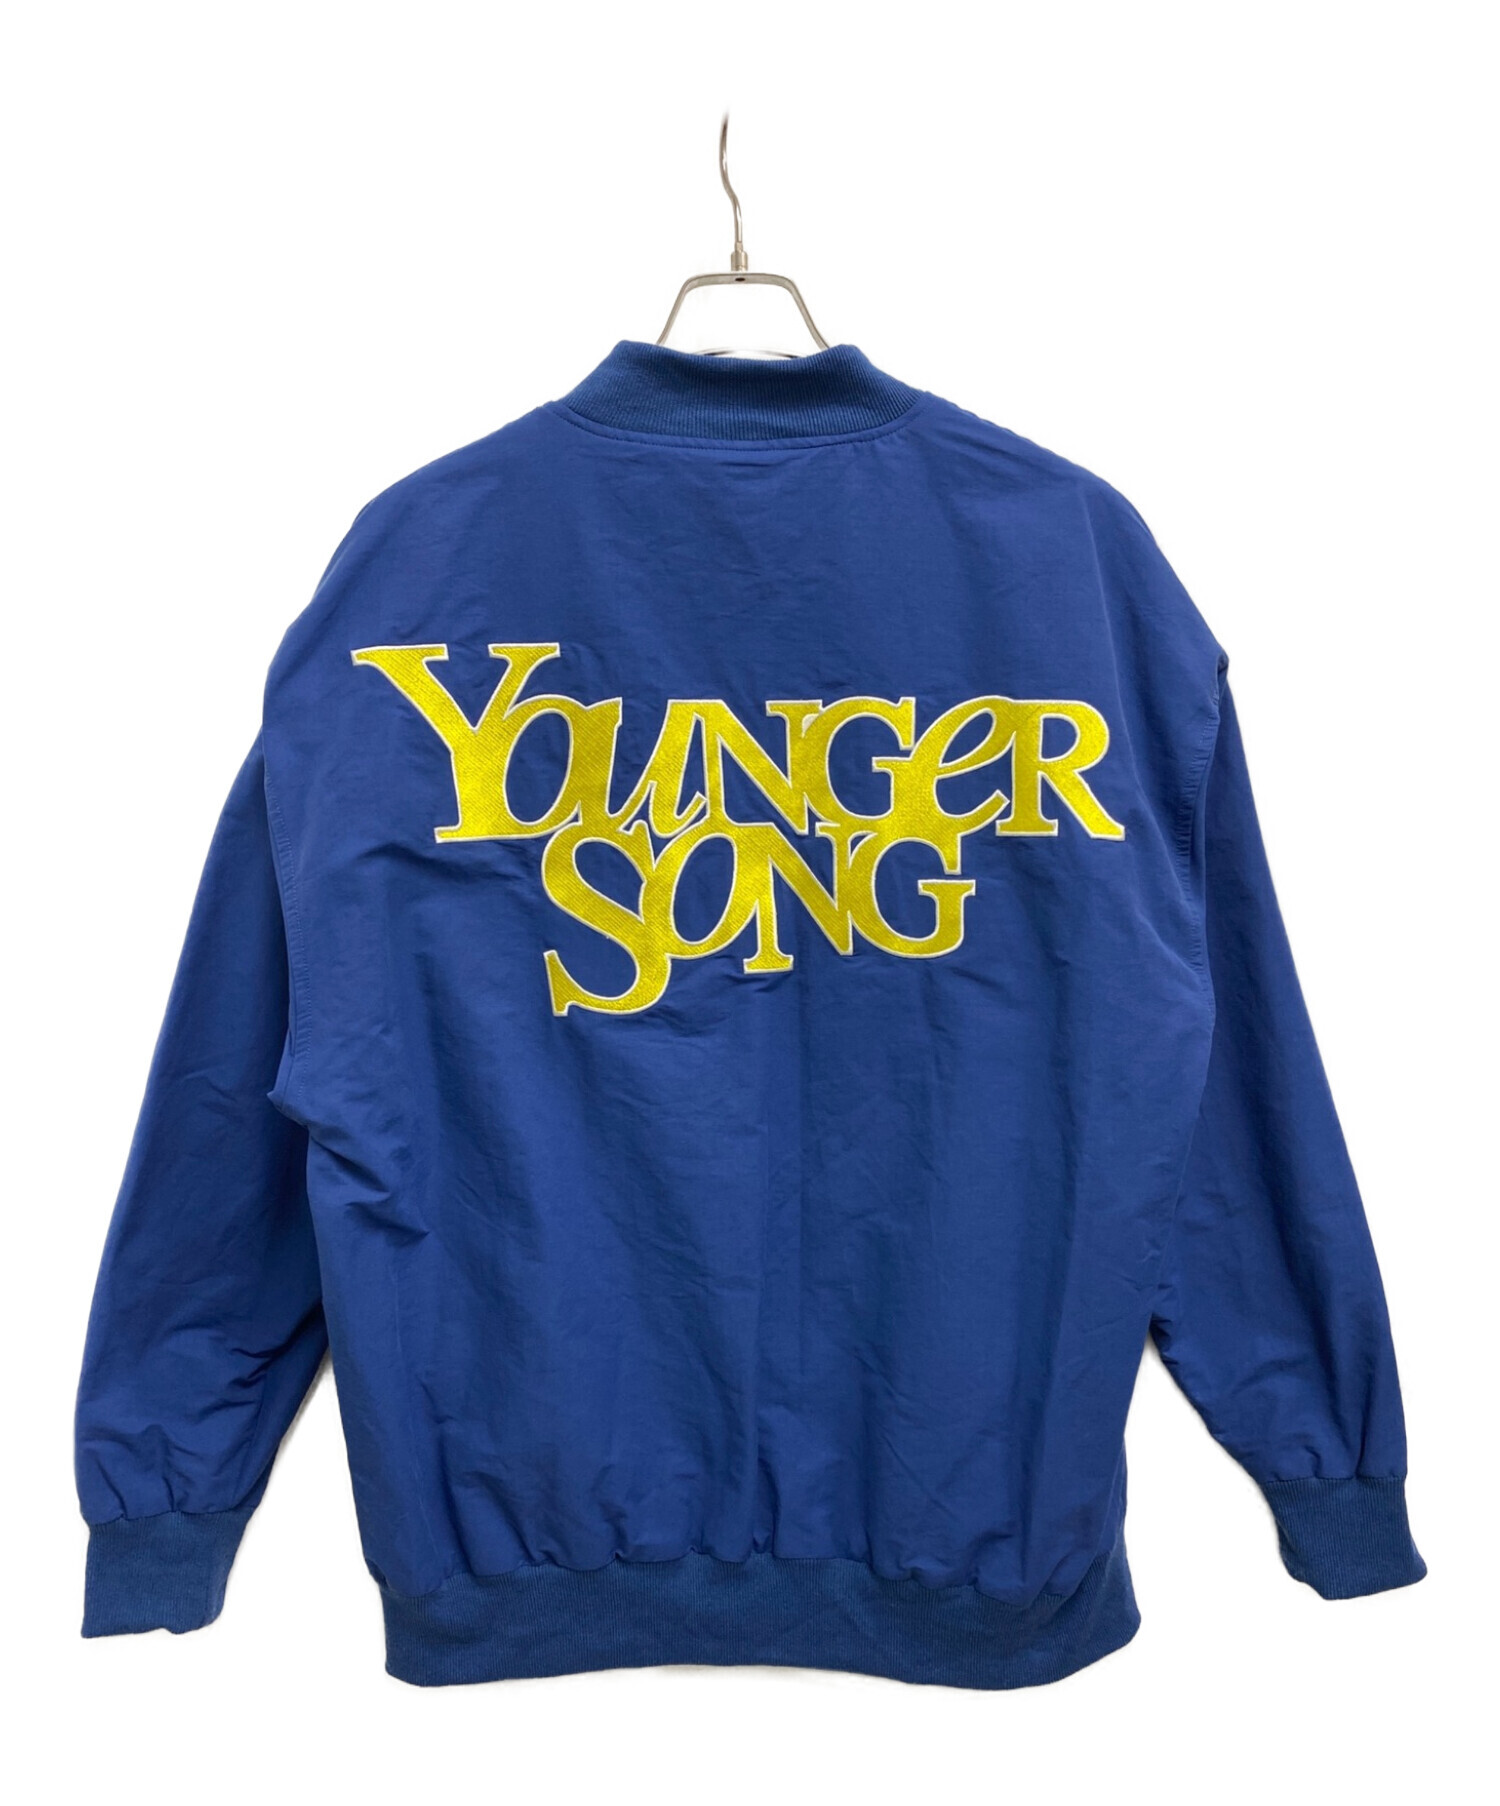 YOUNGER SONG (ヤンガーソング) ジャケット ブルー サイズ:M